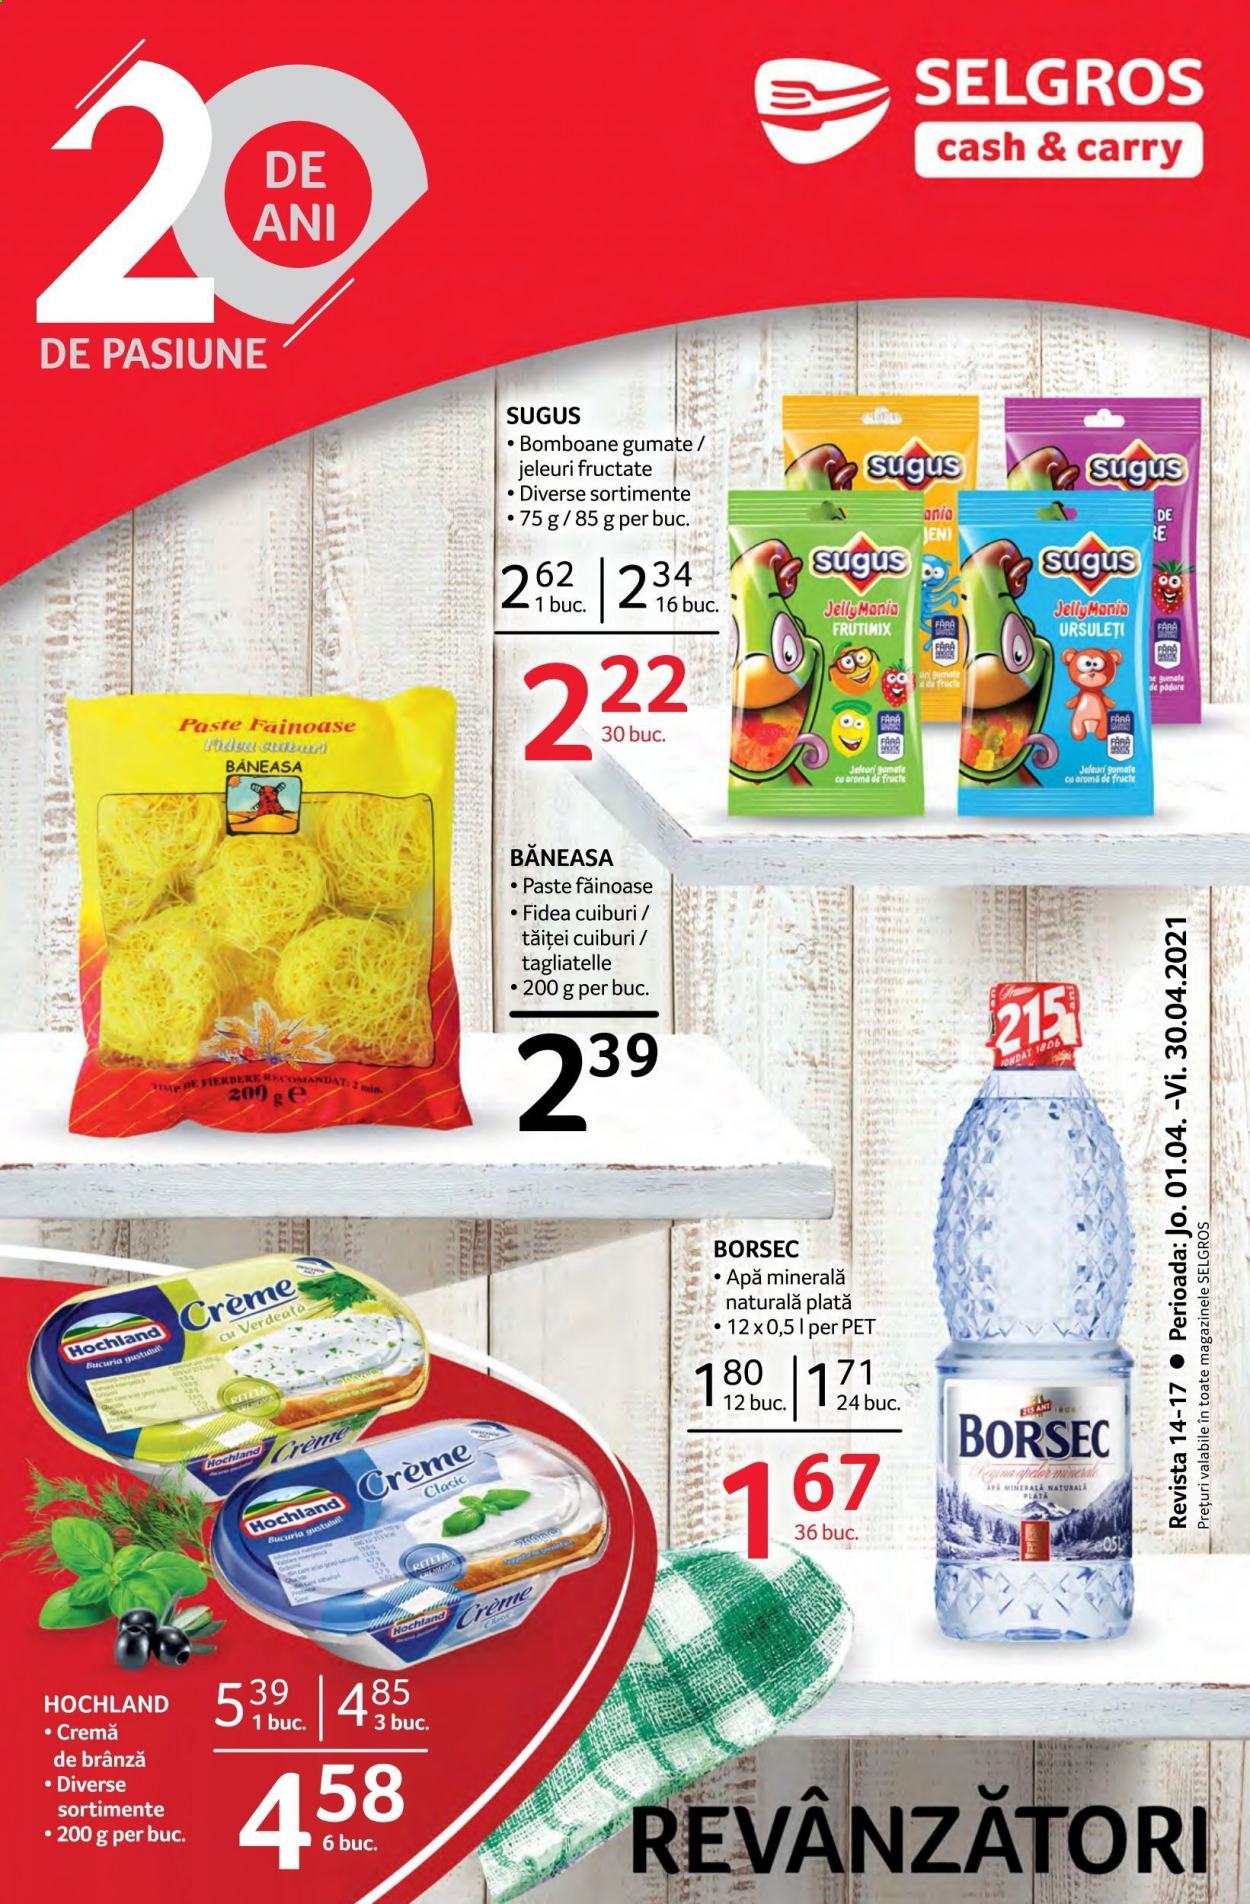 thumbnail - Cataloage Selgros - 01.04.2021 - 30.04.2021 - Produse în vânzare - Hochland, bomboane, paşte, apă minerală, apă minerală plată, cremă. Pagina 1.